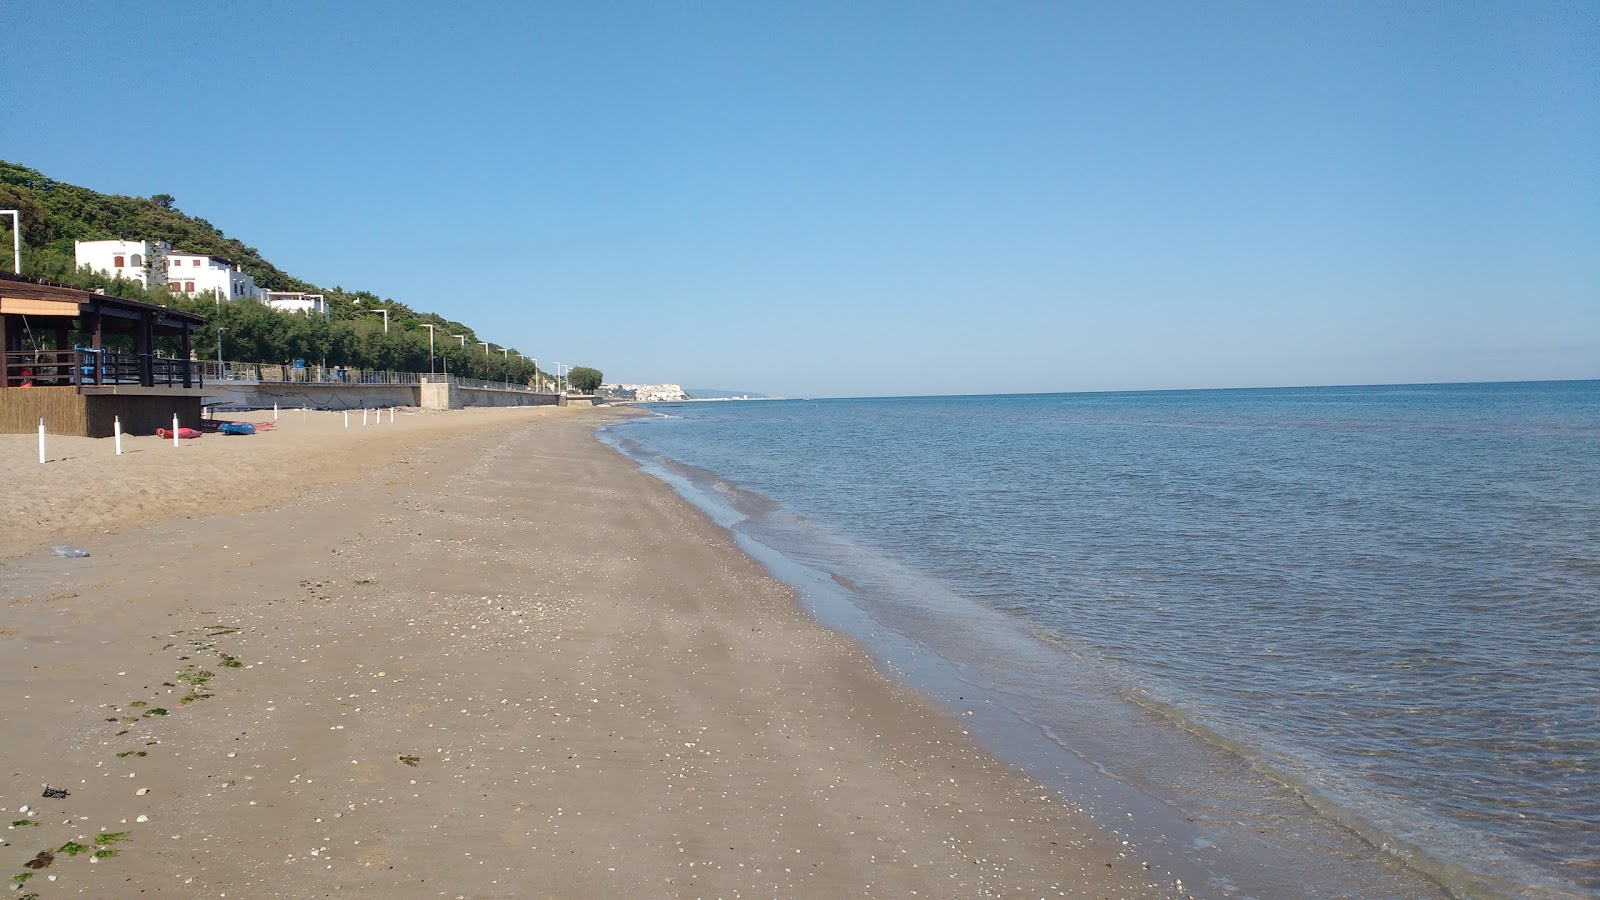 Foto af Spiaggia di San Menaio med brunt sand overflade